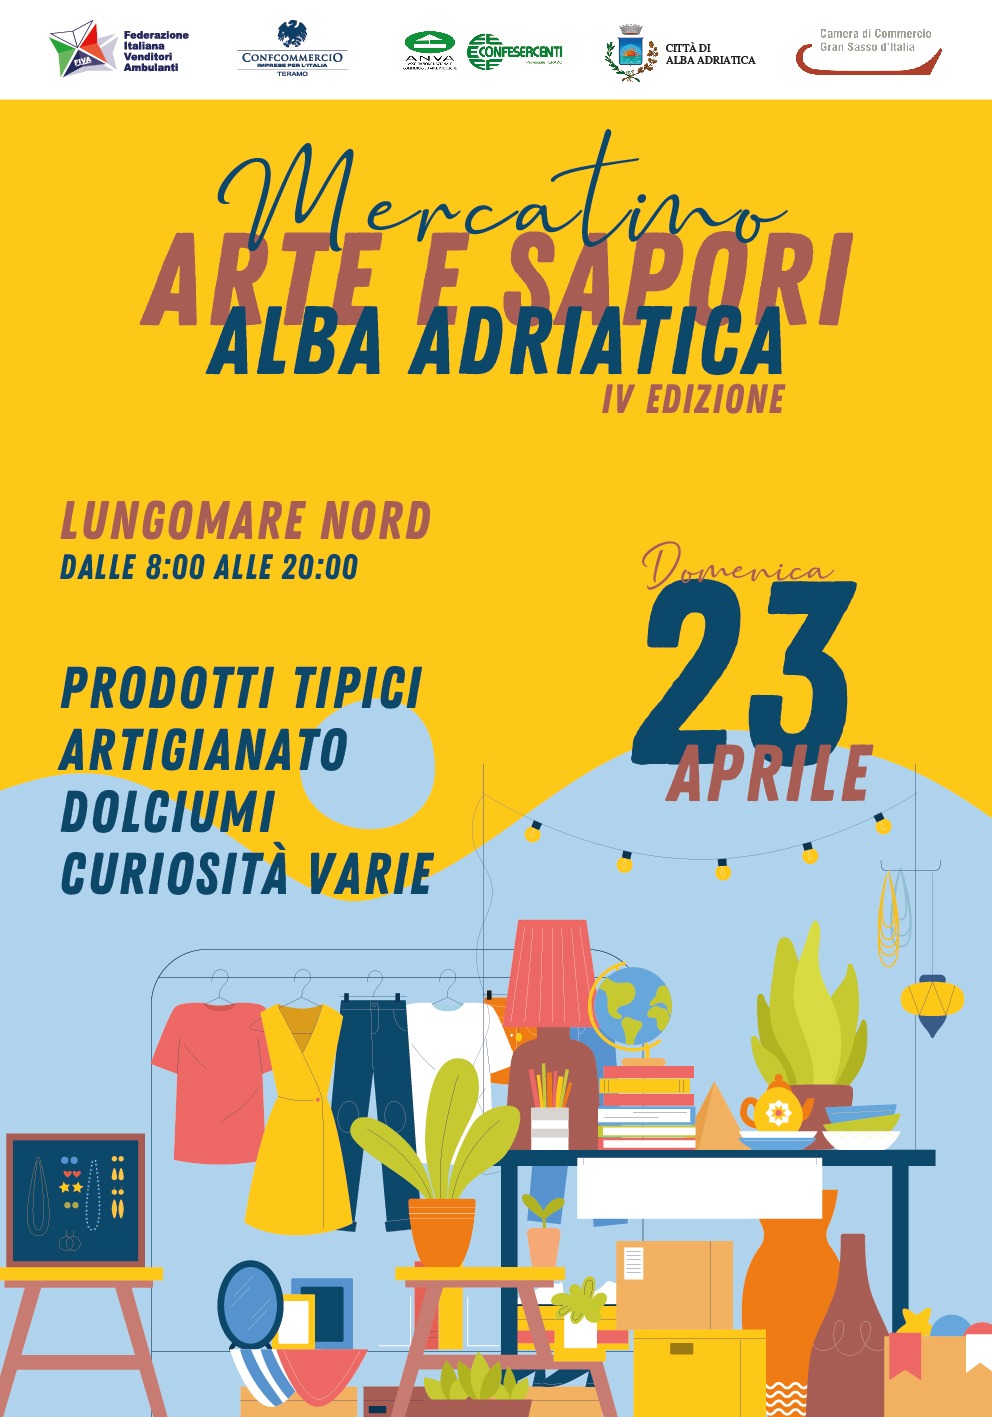 MERCATINO ARTE E SAPORI IV EDIZIONE  Domenica 23 Aprile Alba Adriatica